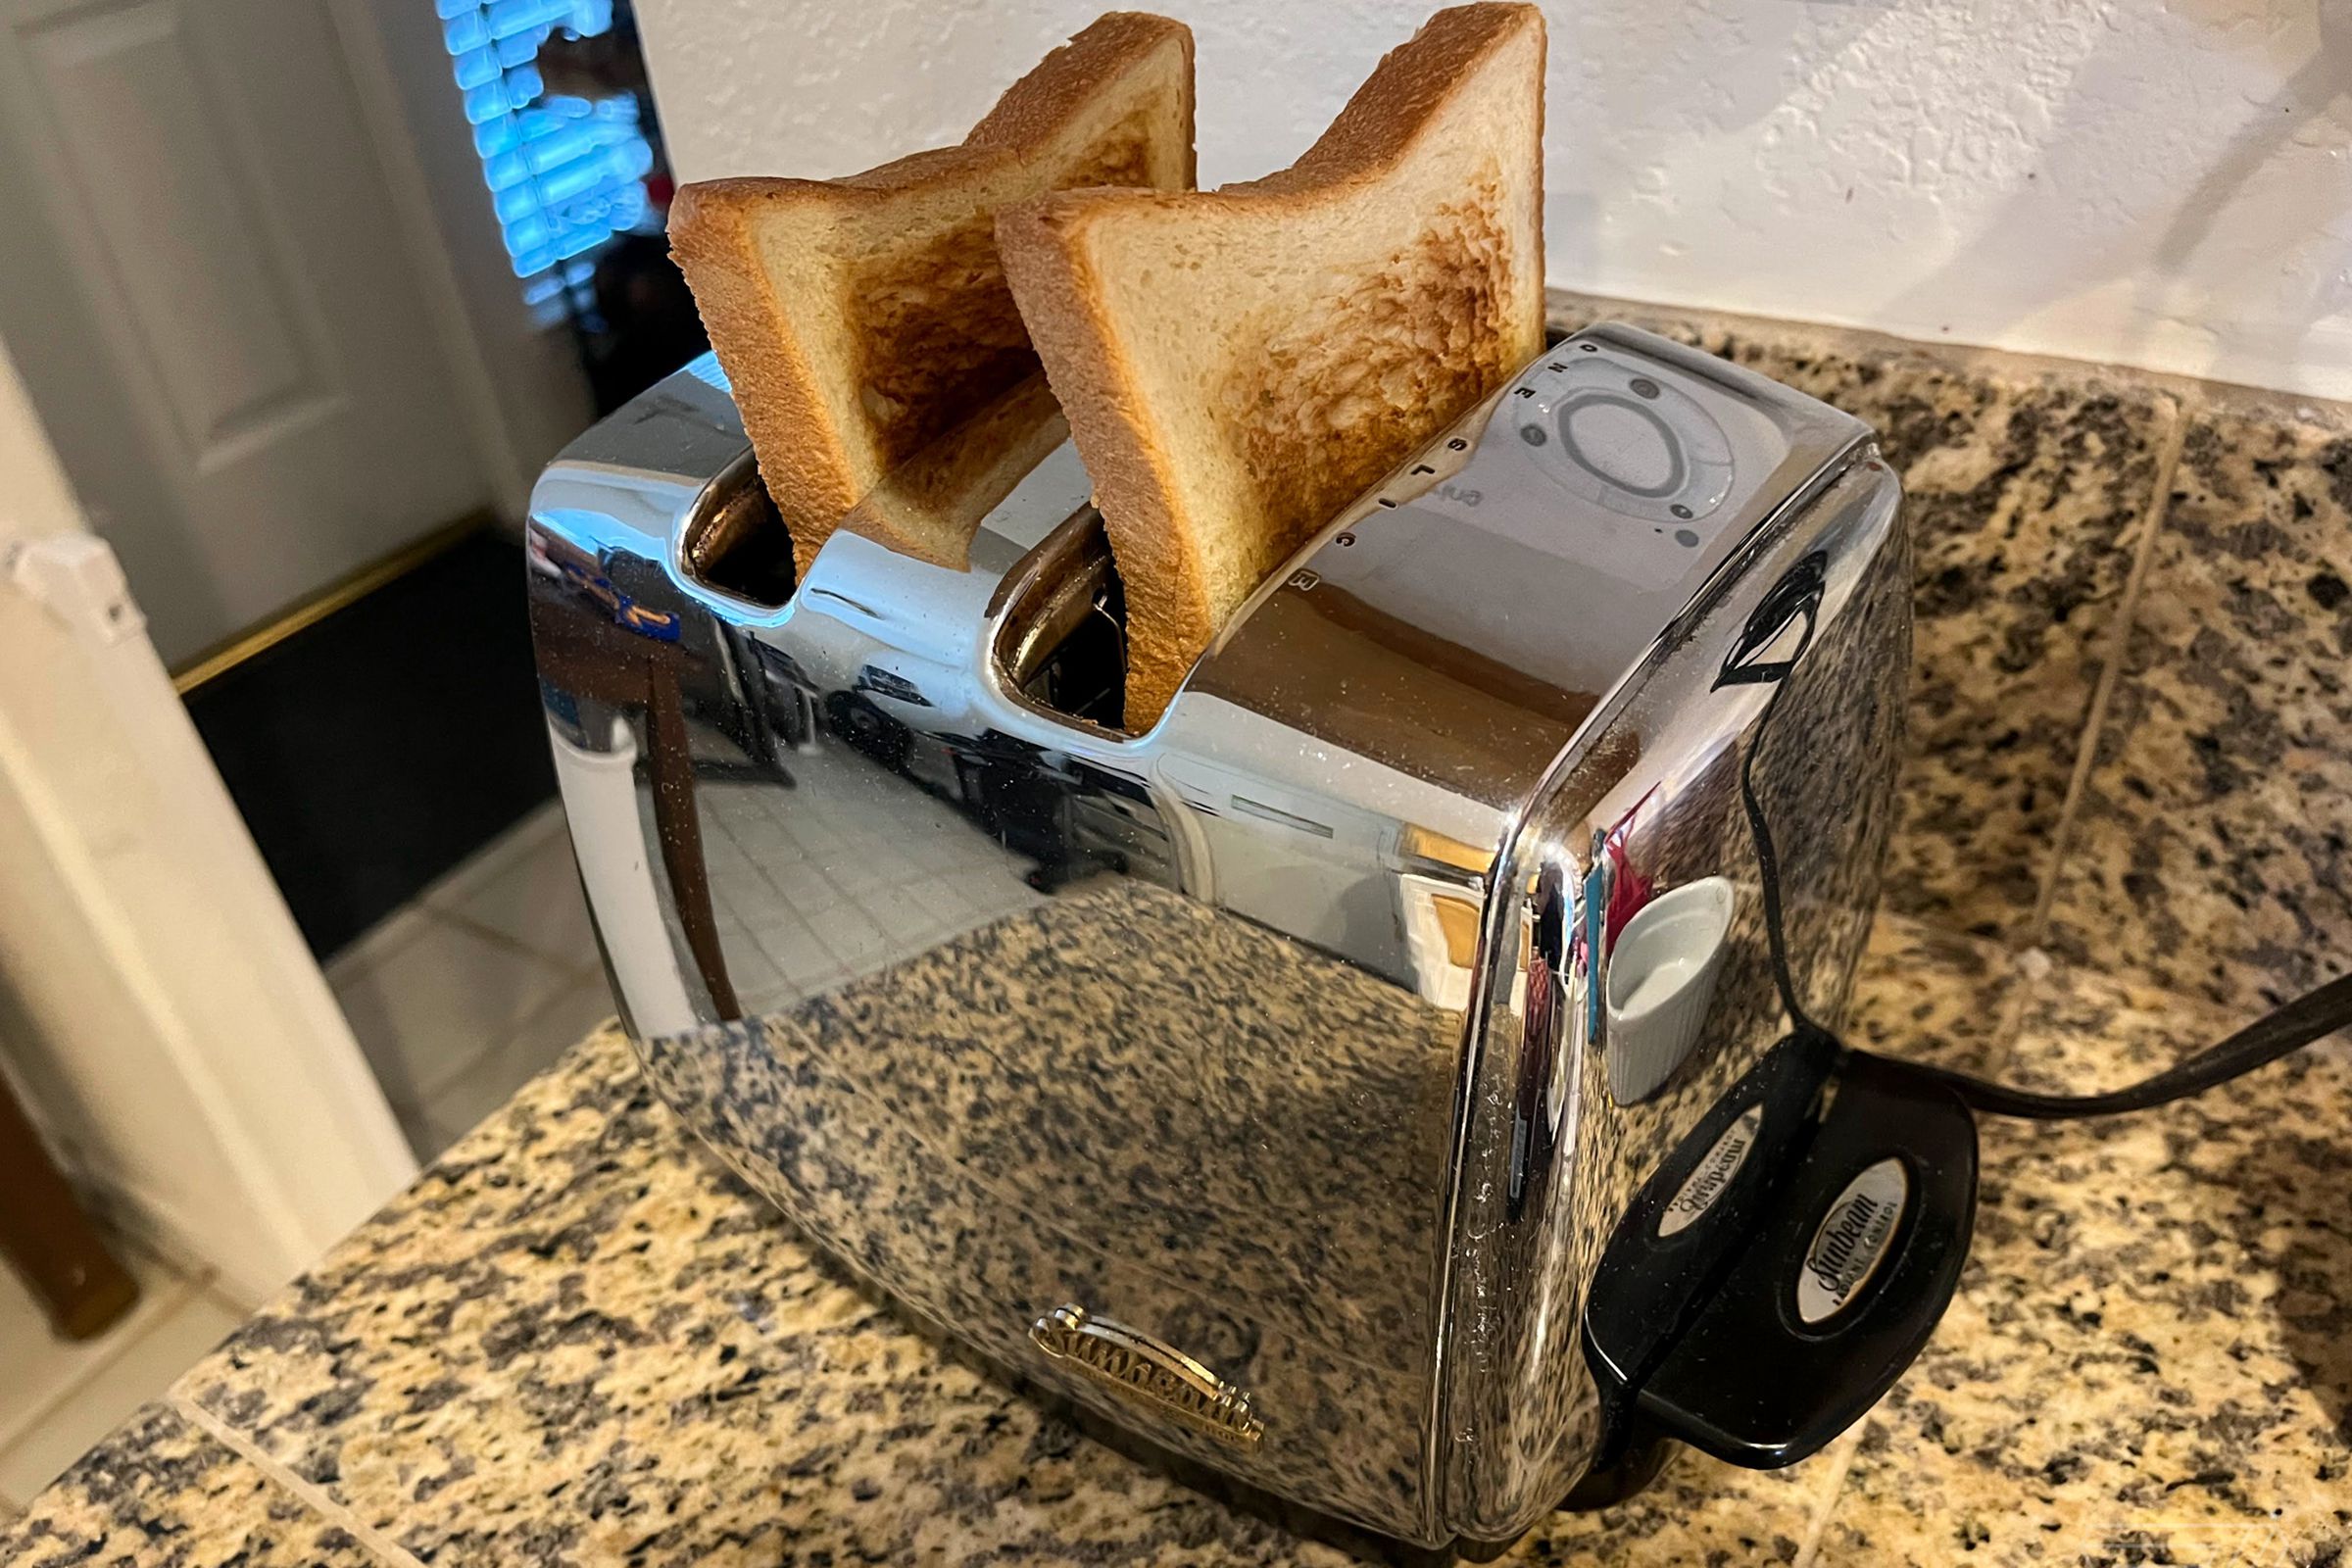 A Sunbeam Radiant Toaster.